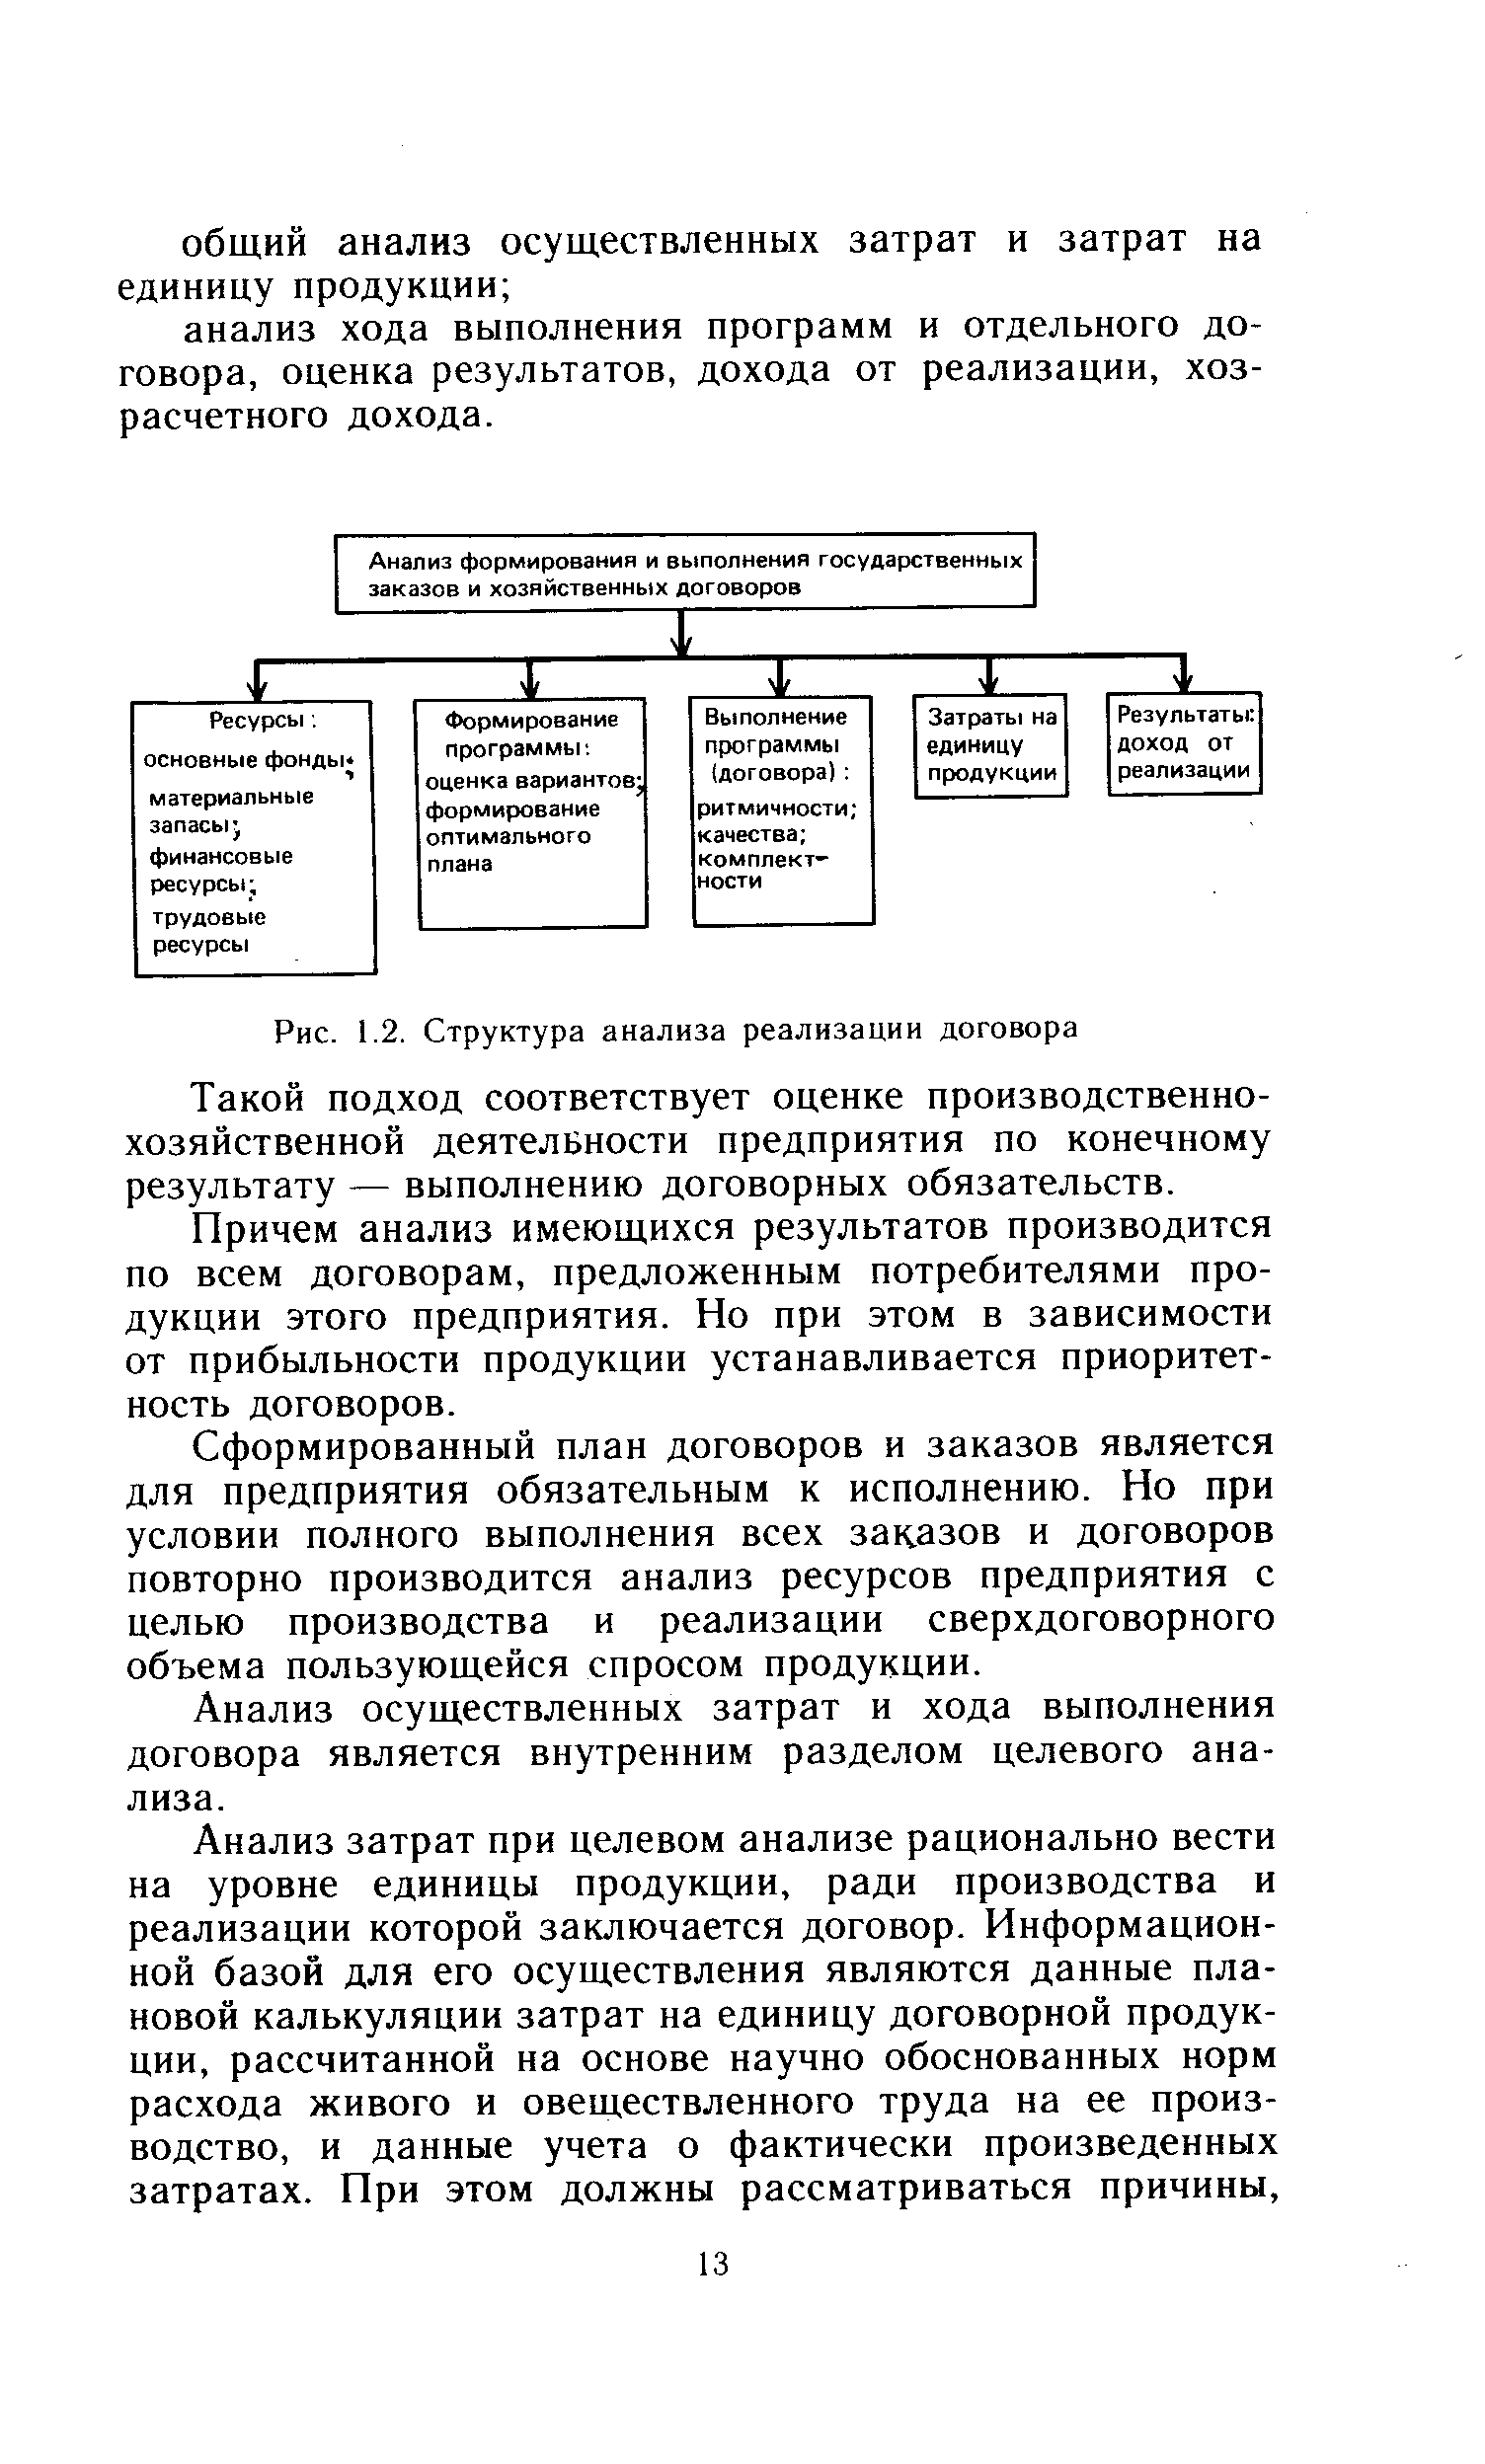 Рис. 1.2. Структура анализа реализации договора